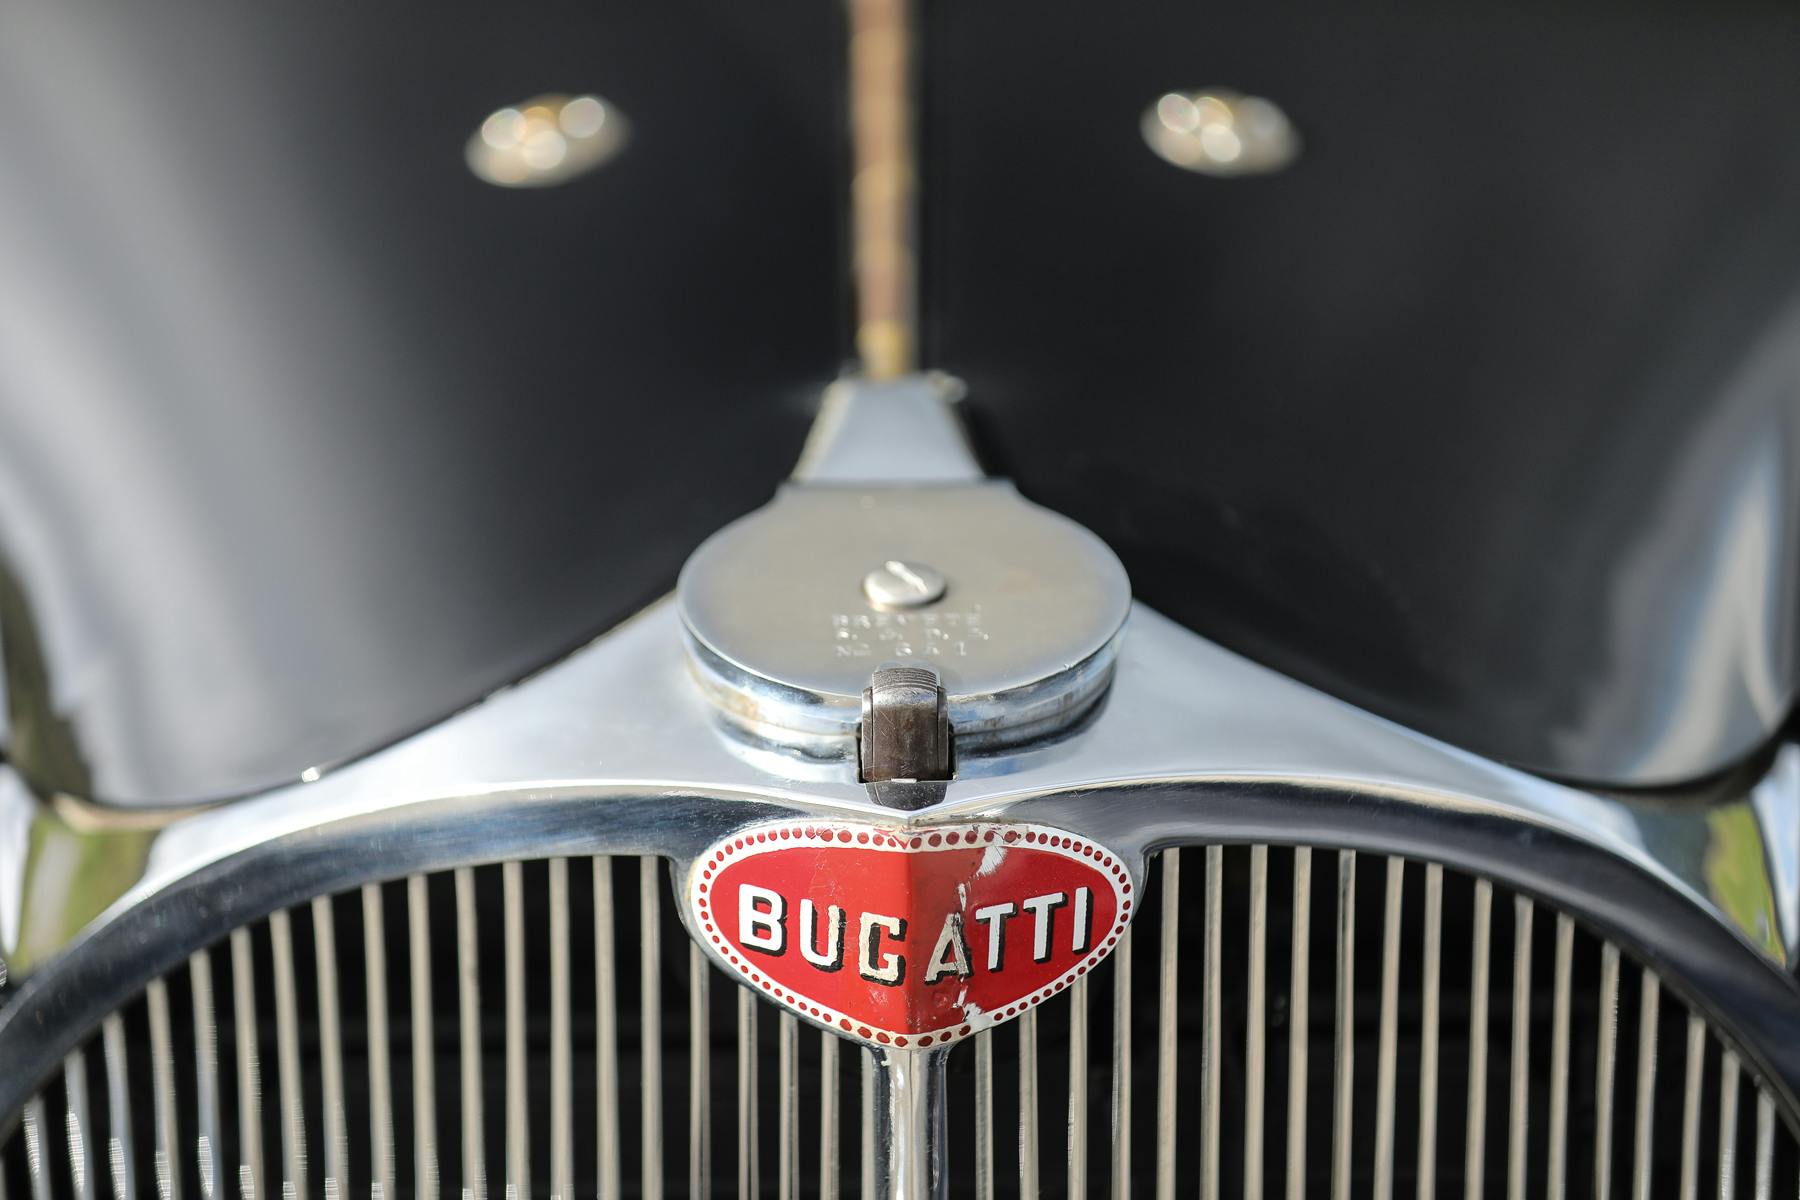 1937 Bugatti Type 57S Atalante front emblem grille detail